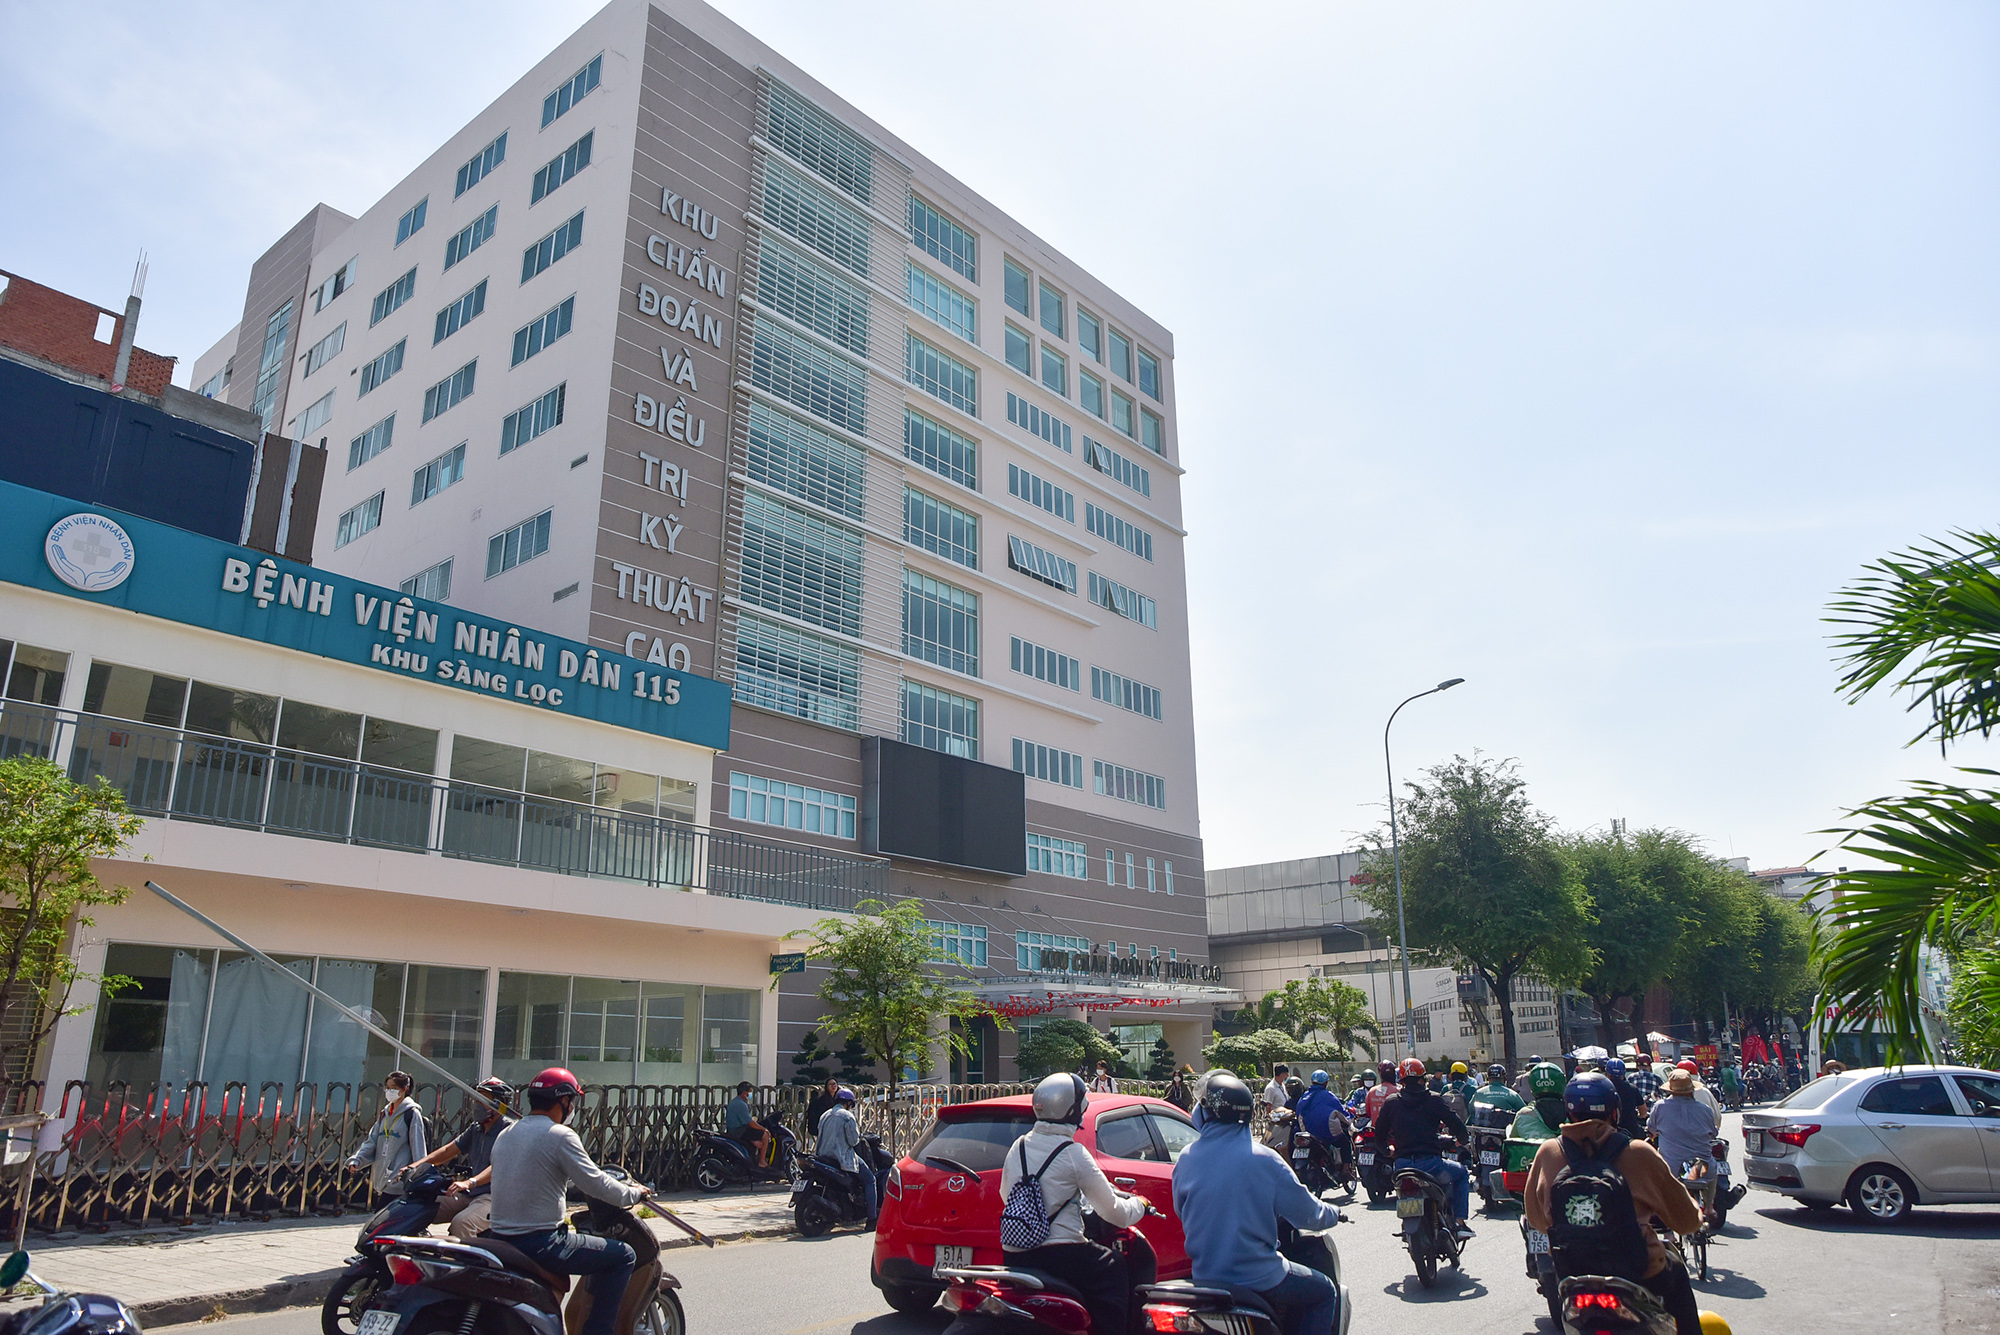 Bệnh viện Nhân Dân 115 vừa khánh thành Khu Chẩn đoán và điều trị kỹ thuật cao, được trang bị công nghệ hiện đại, kỳ vọng giúp giảm tải cho bệnh viện. Toà nhà 10 tầng nằm bên đường Sư Vạn Hạnh, quận 10, được khởi công từ năm 2016, tổng diện tích sàn gần 20.000m2.